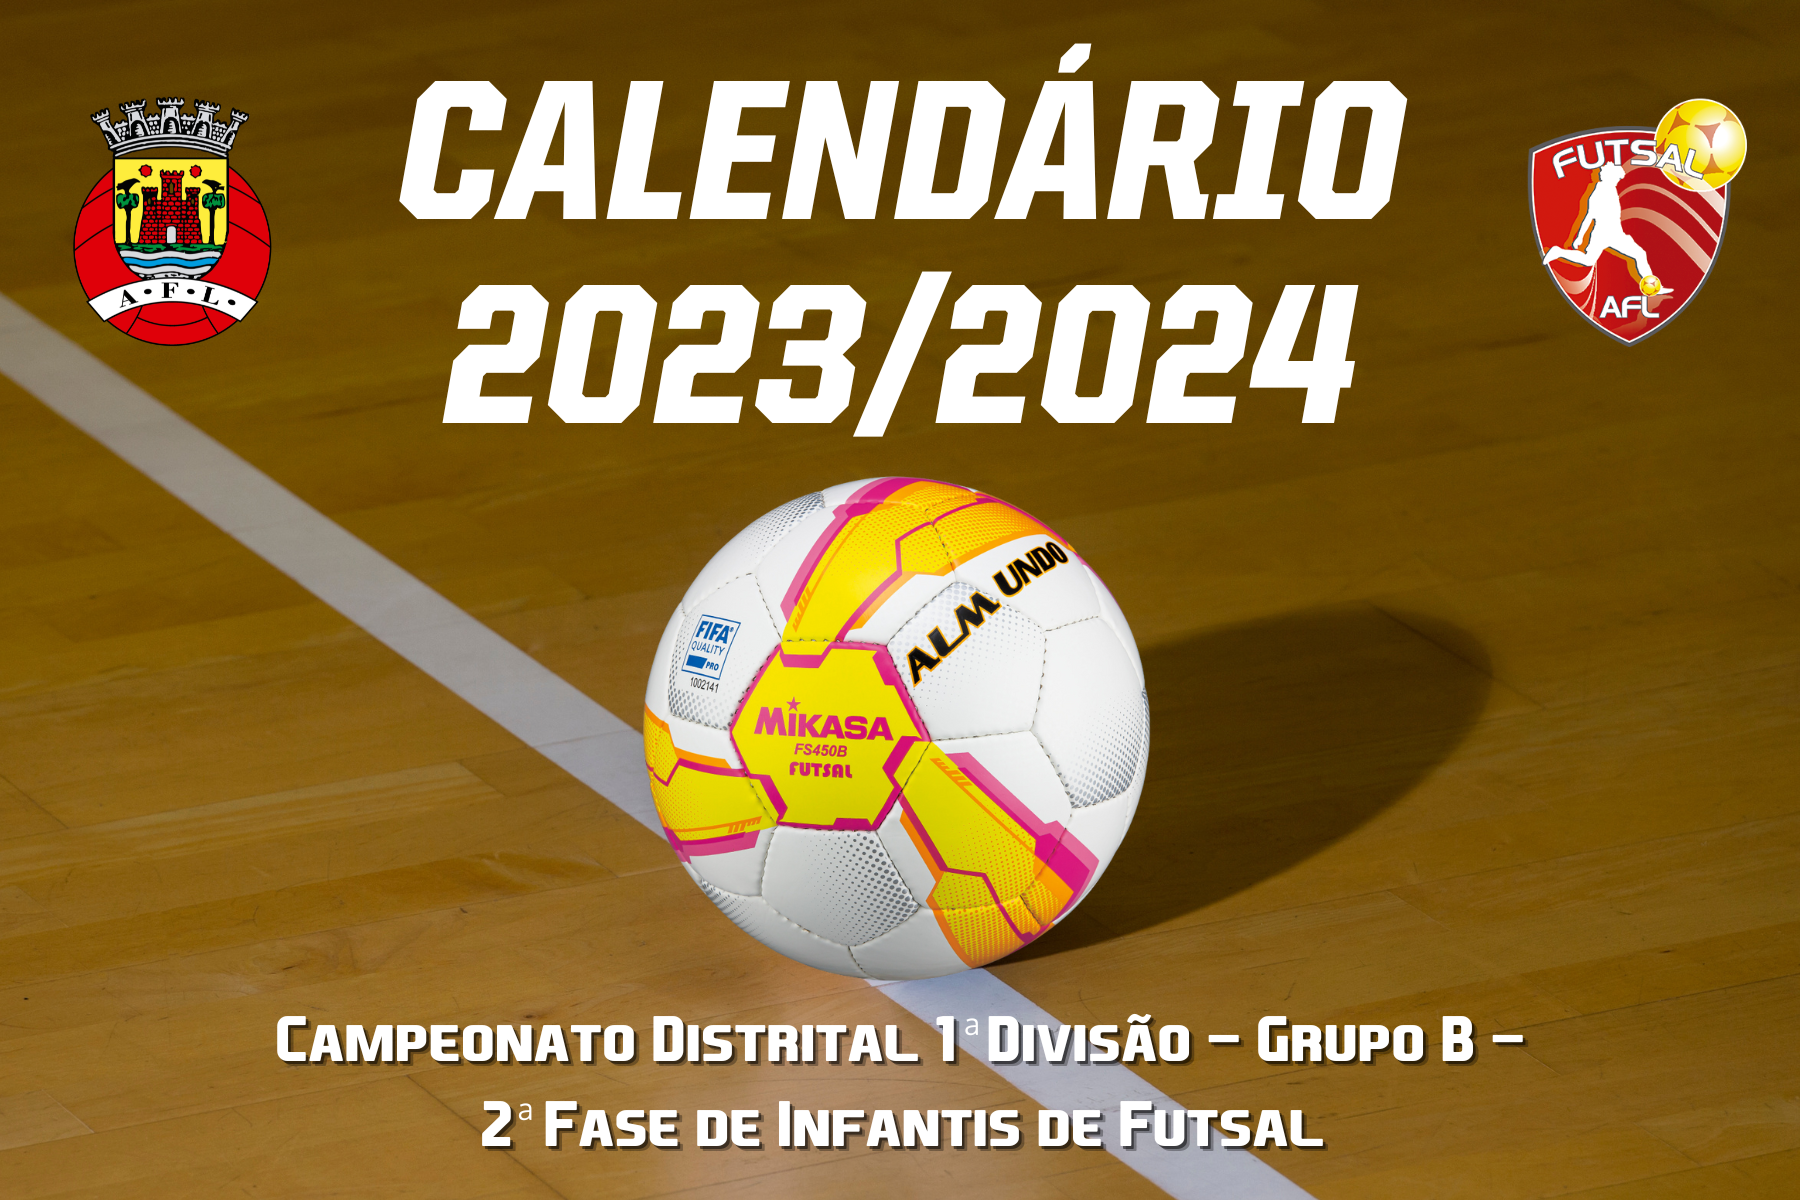 Calendário do Campeonato Distrital 1ª Divisão - Grupo B - 2ª Fase conhecido